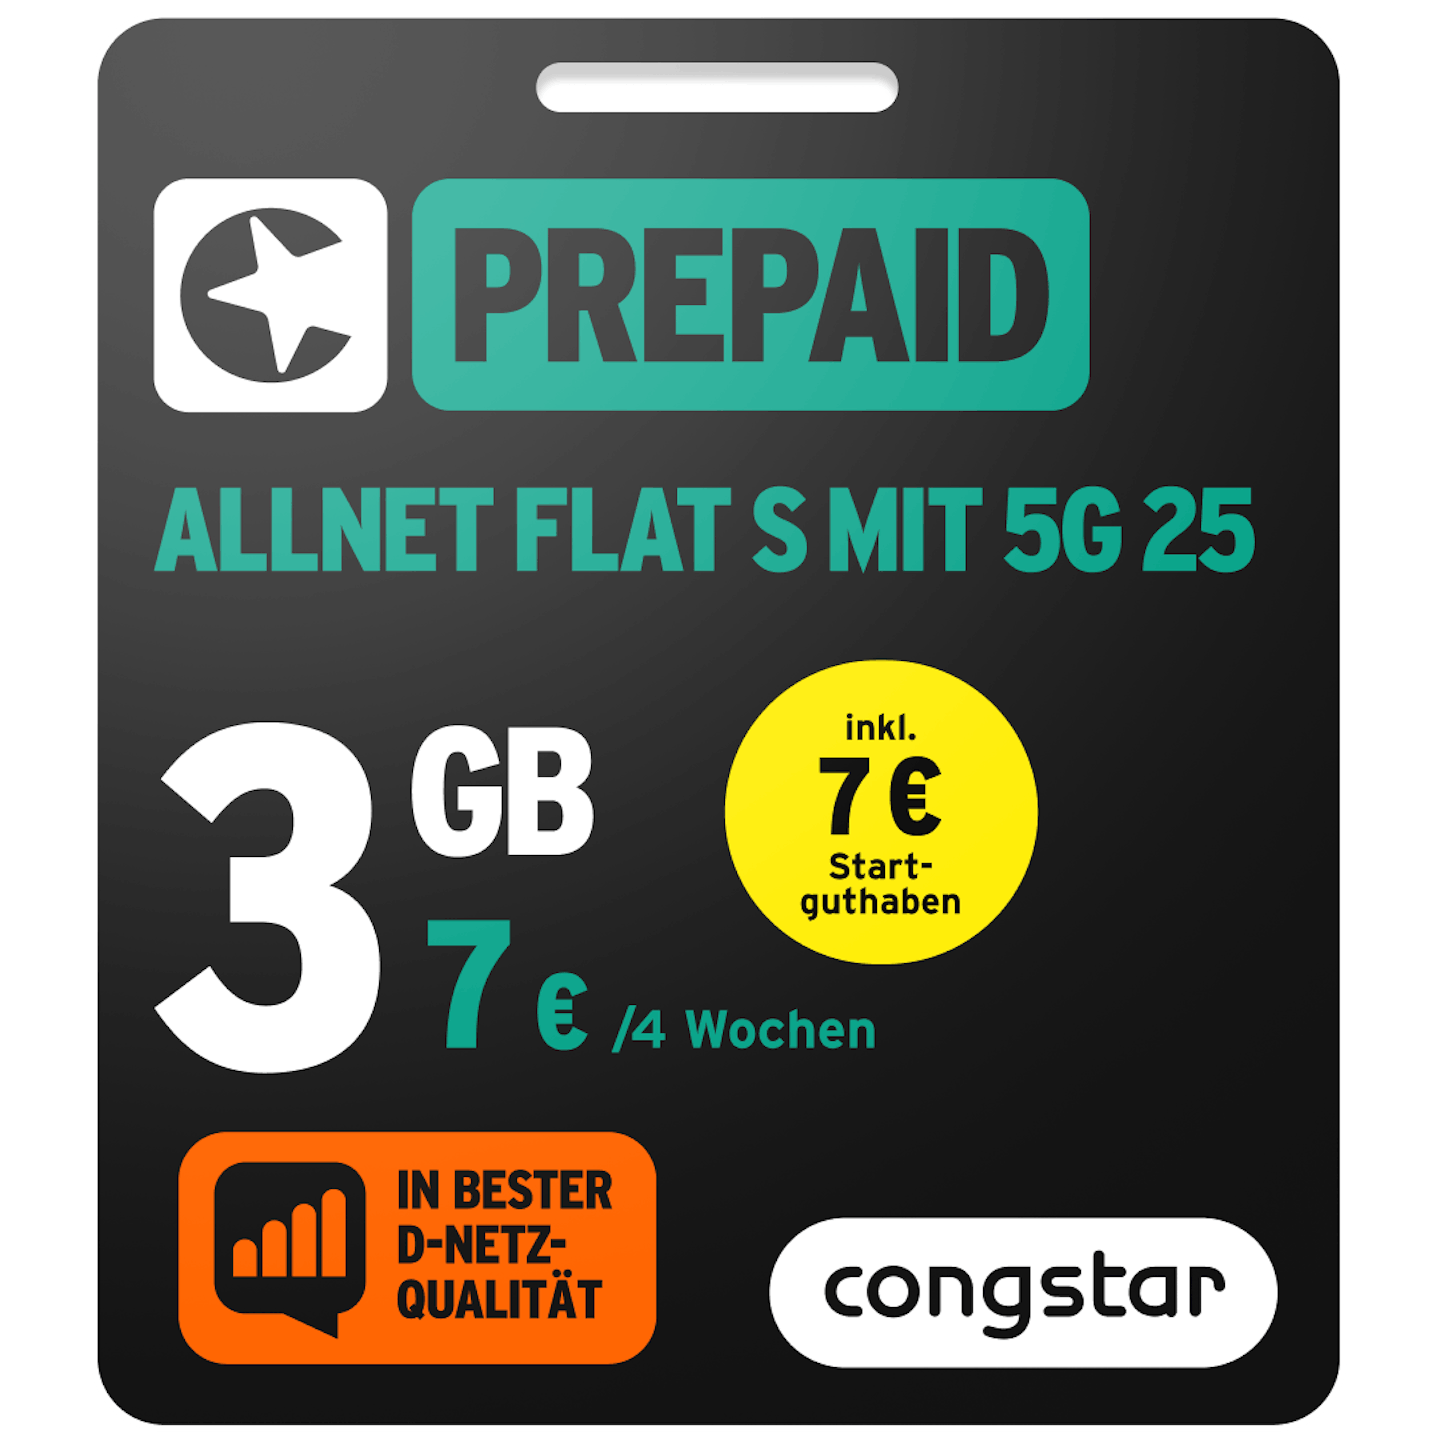 Bild der Verpackung des Prepaid Allnet S mit 5G 25